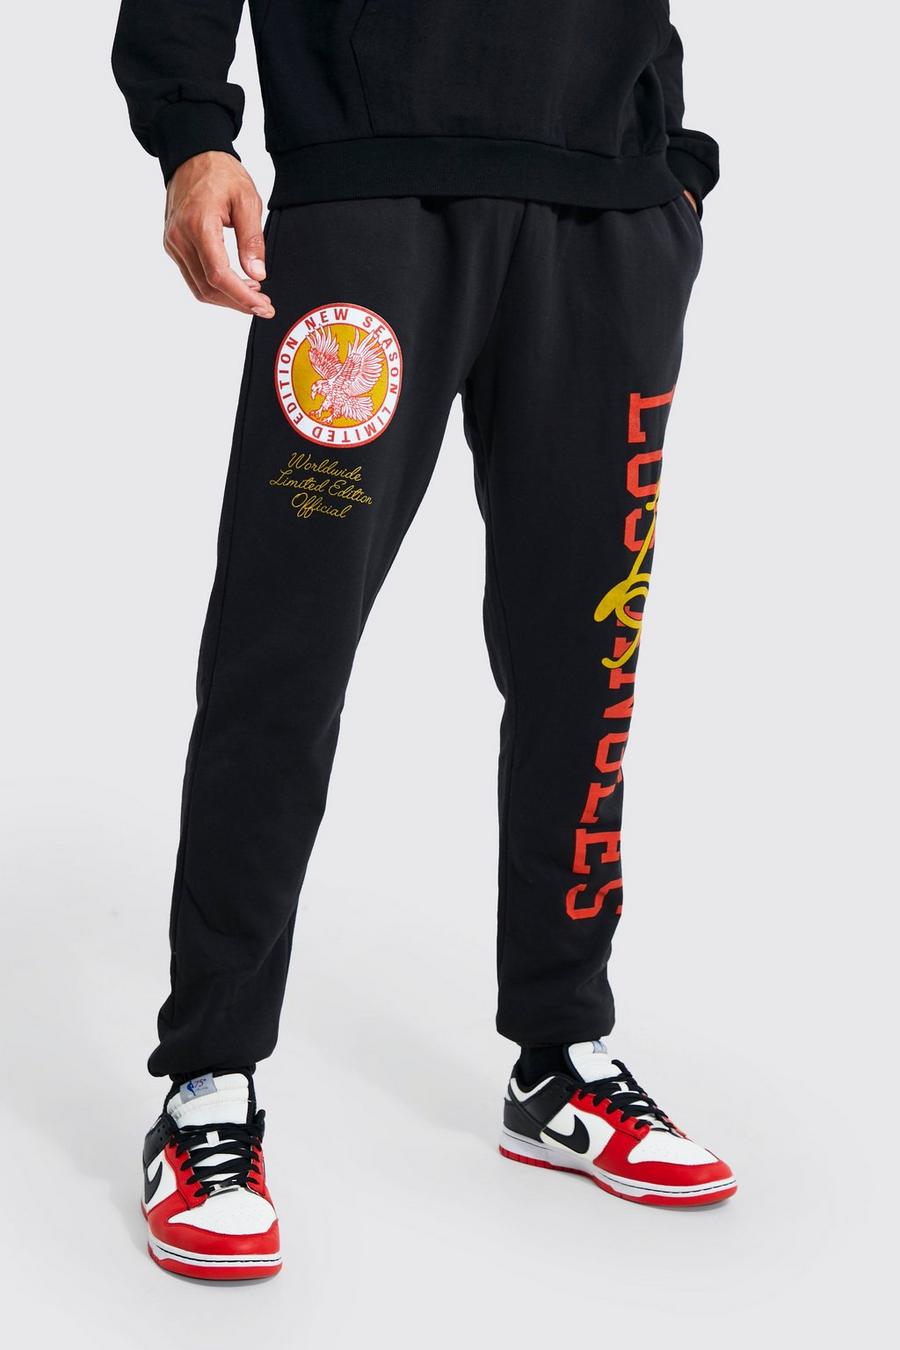 Pantalón deportivo Tall con estampado gráfico universitario de Los Angeles, Black